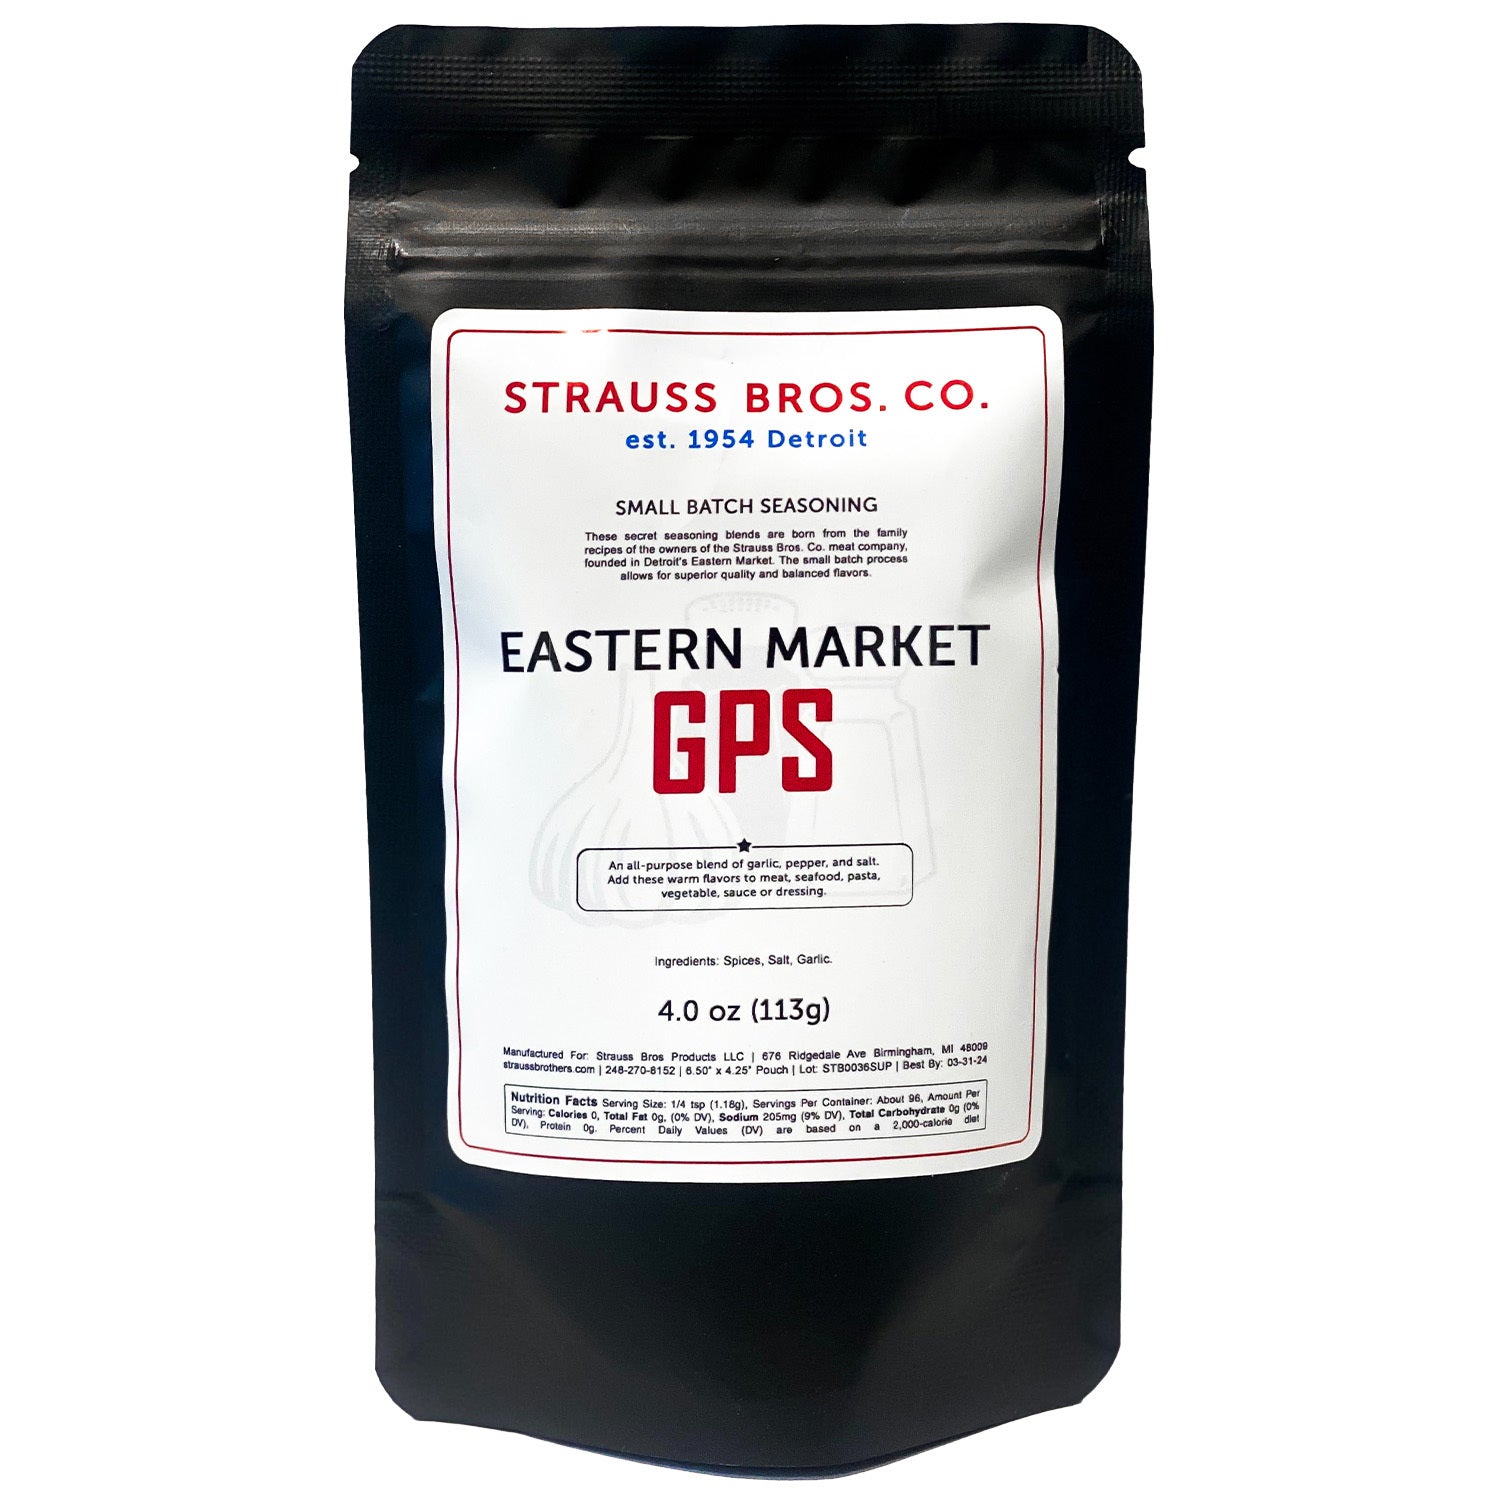 Eastern Market GPS